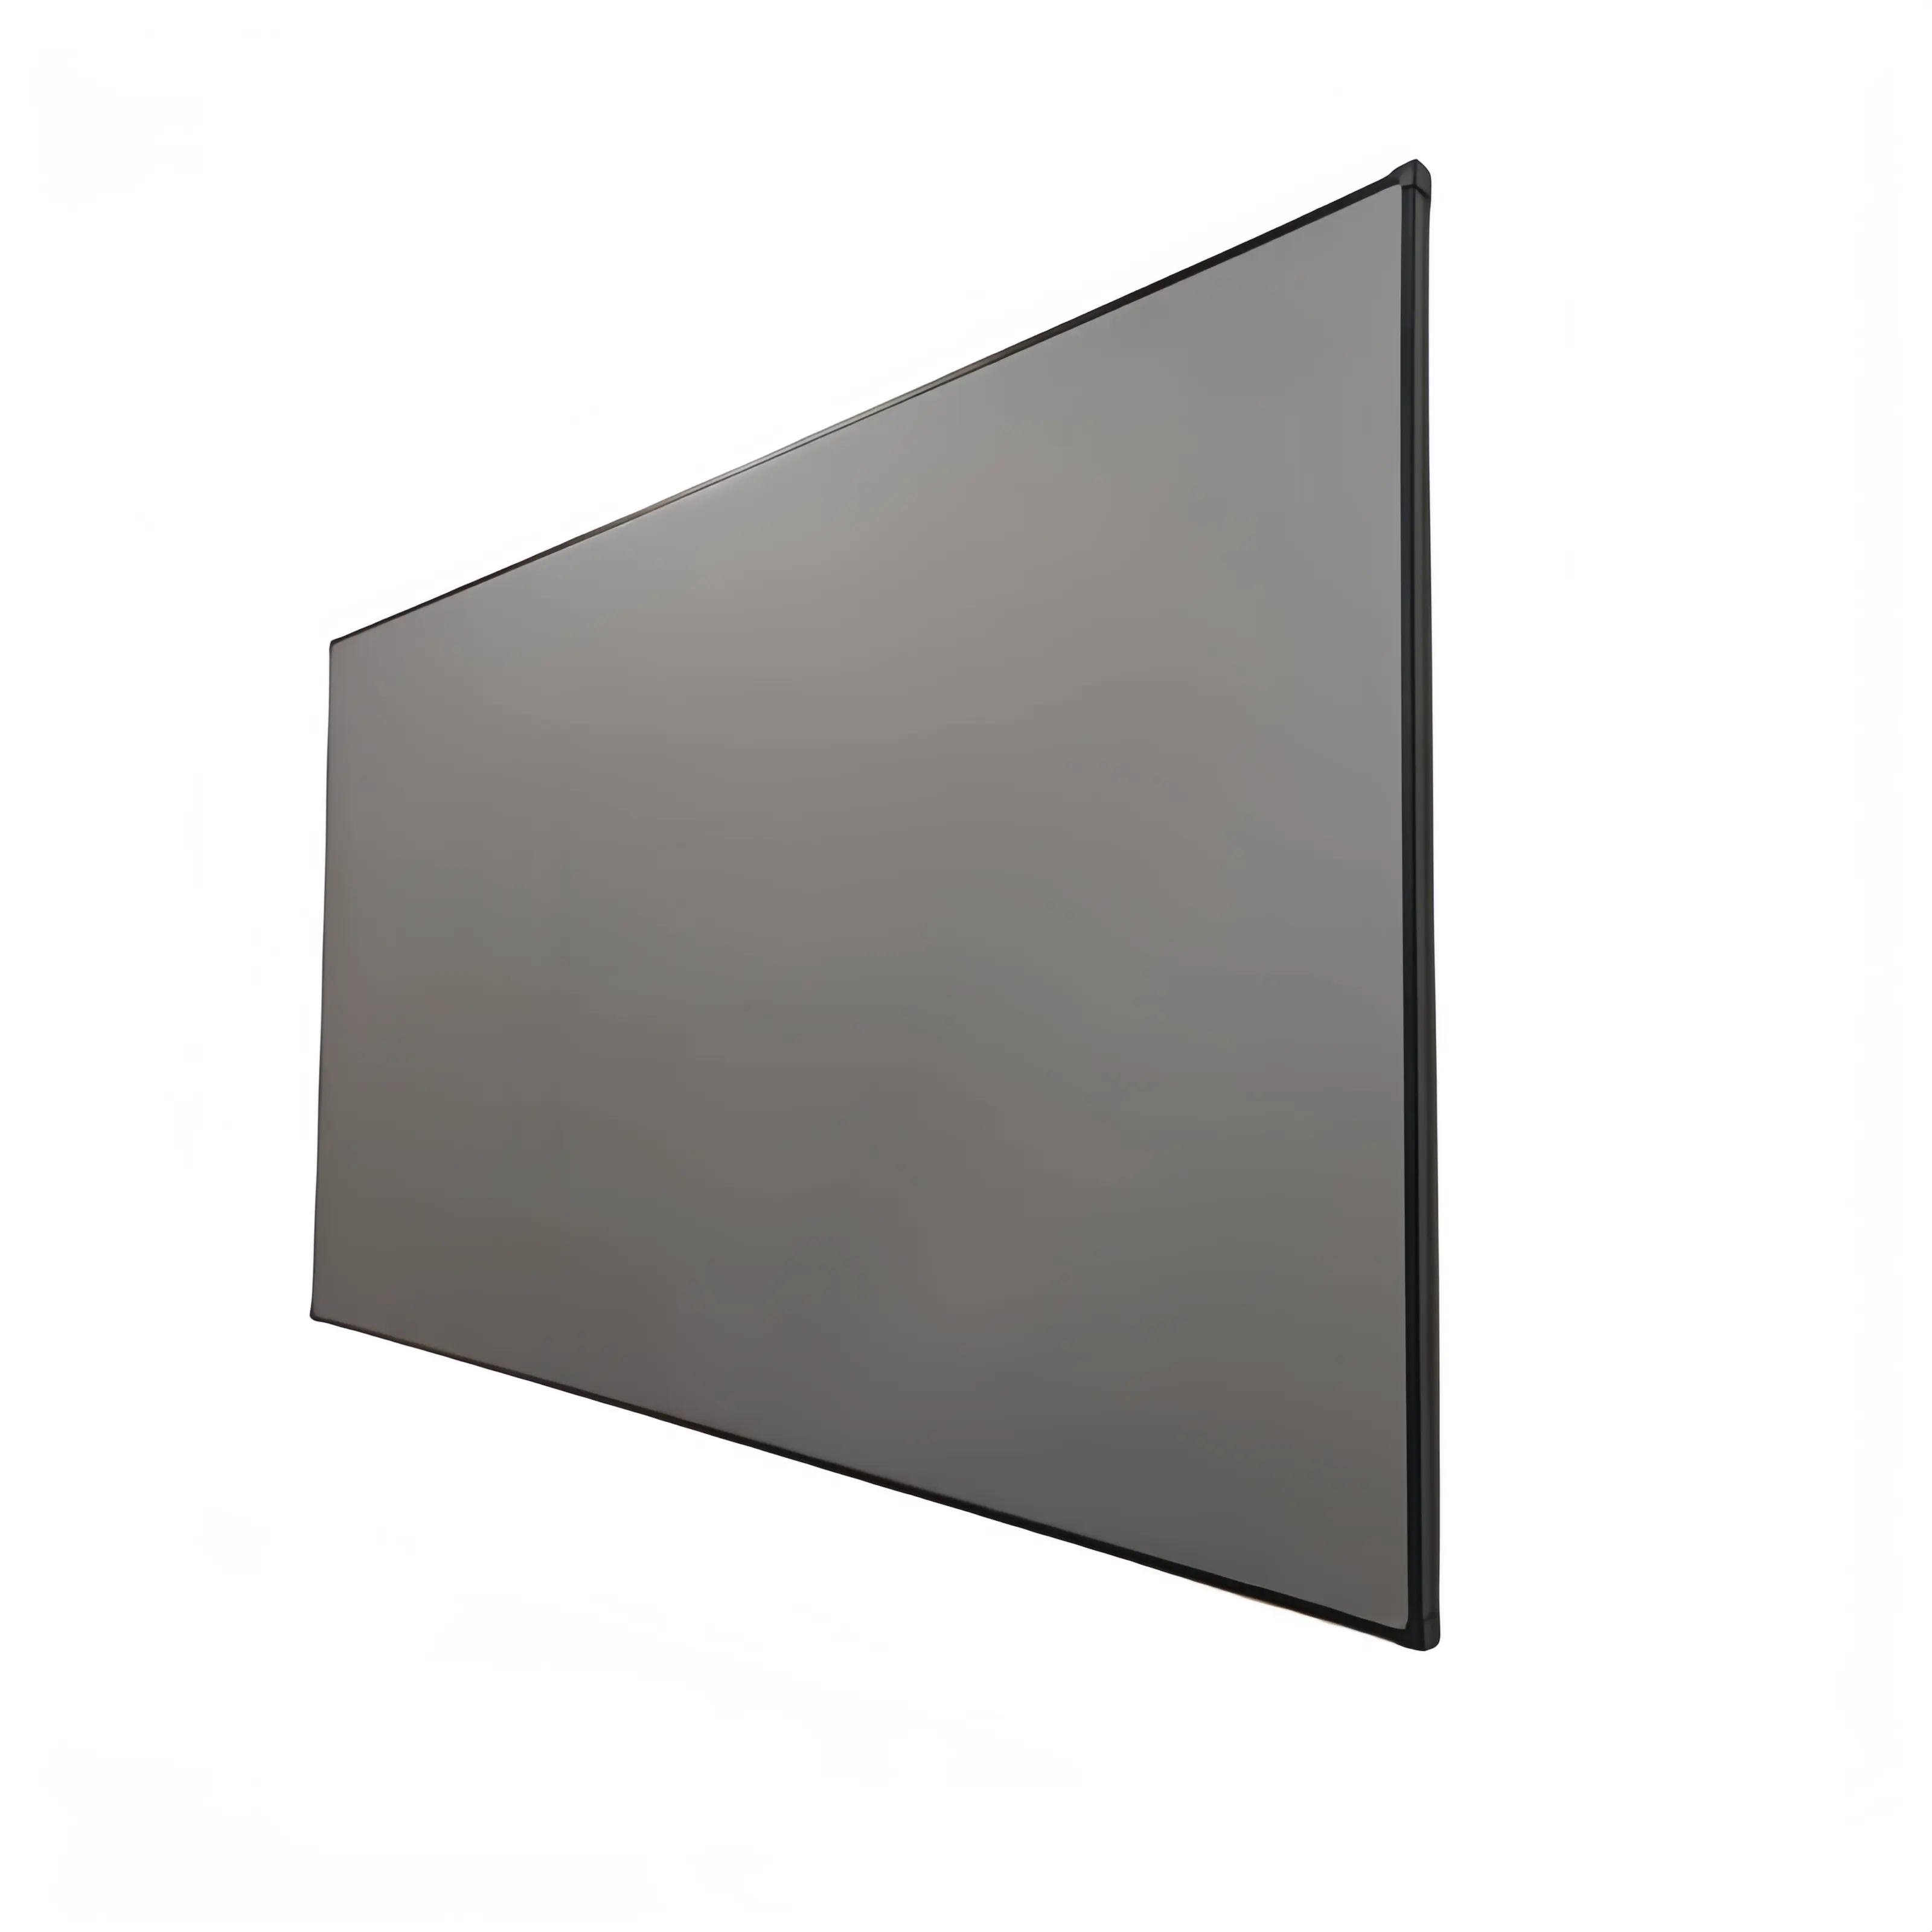 150 بوصة شاشة سوداء كريستال رقيقة إطار ثابت شاشة عرض مضادة للضوء